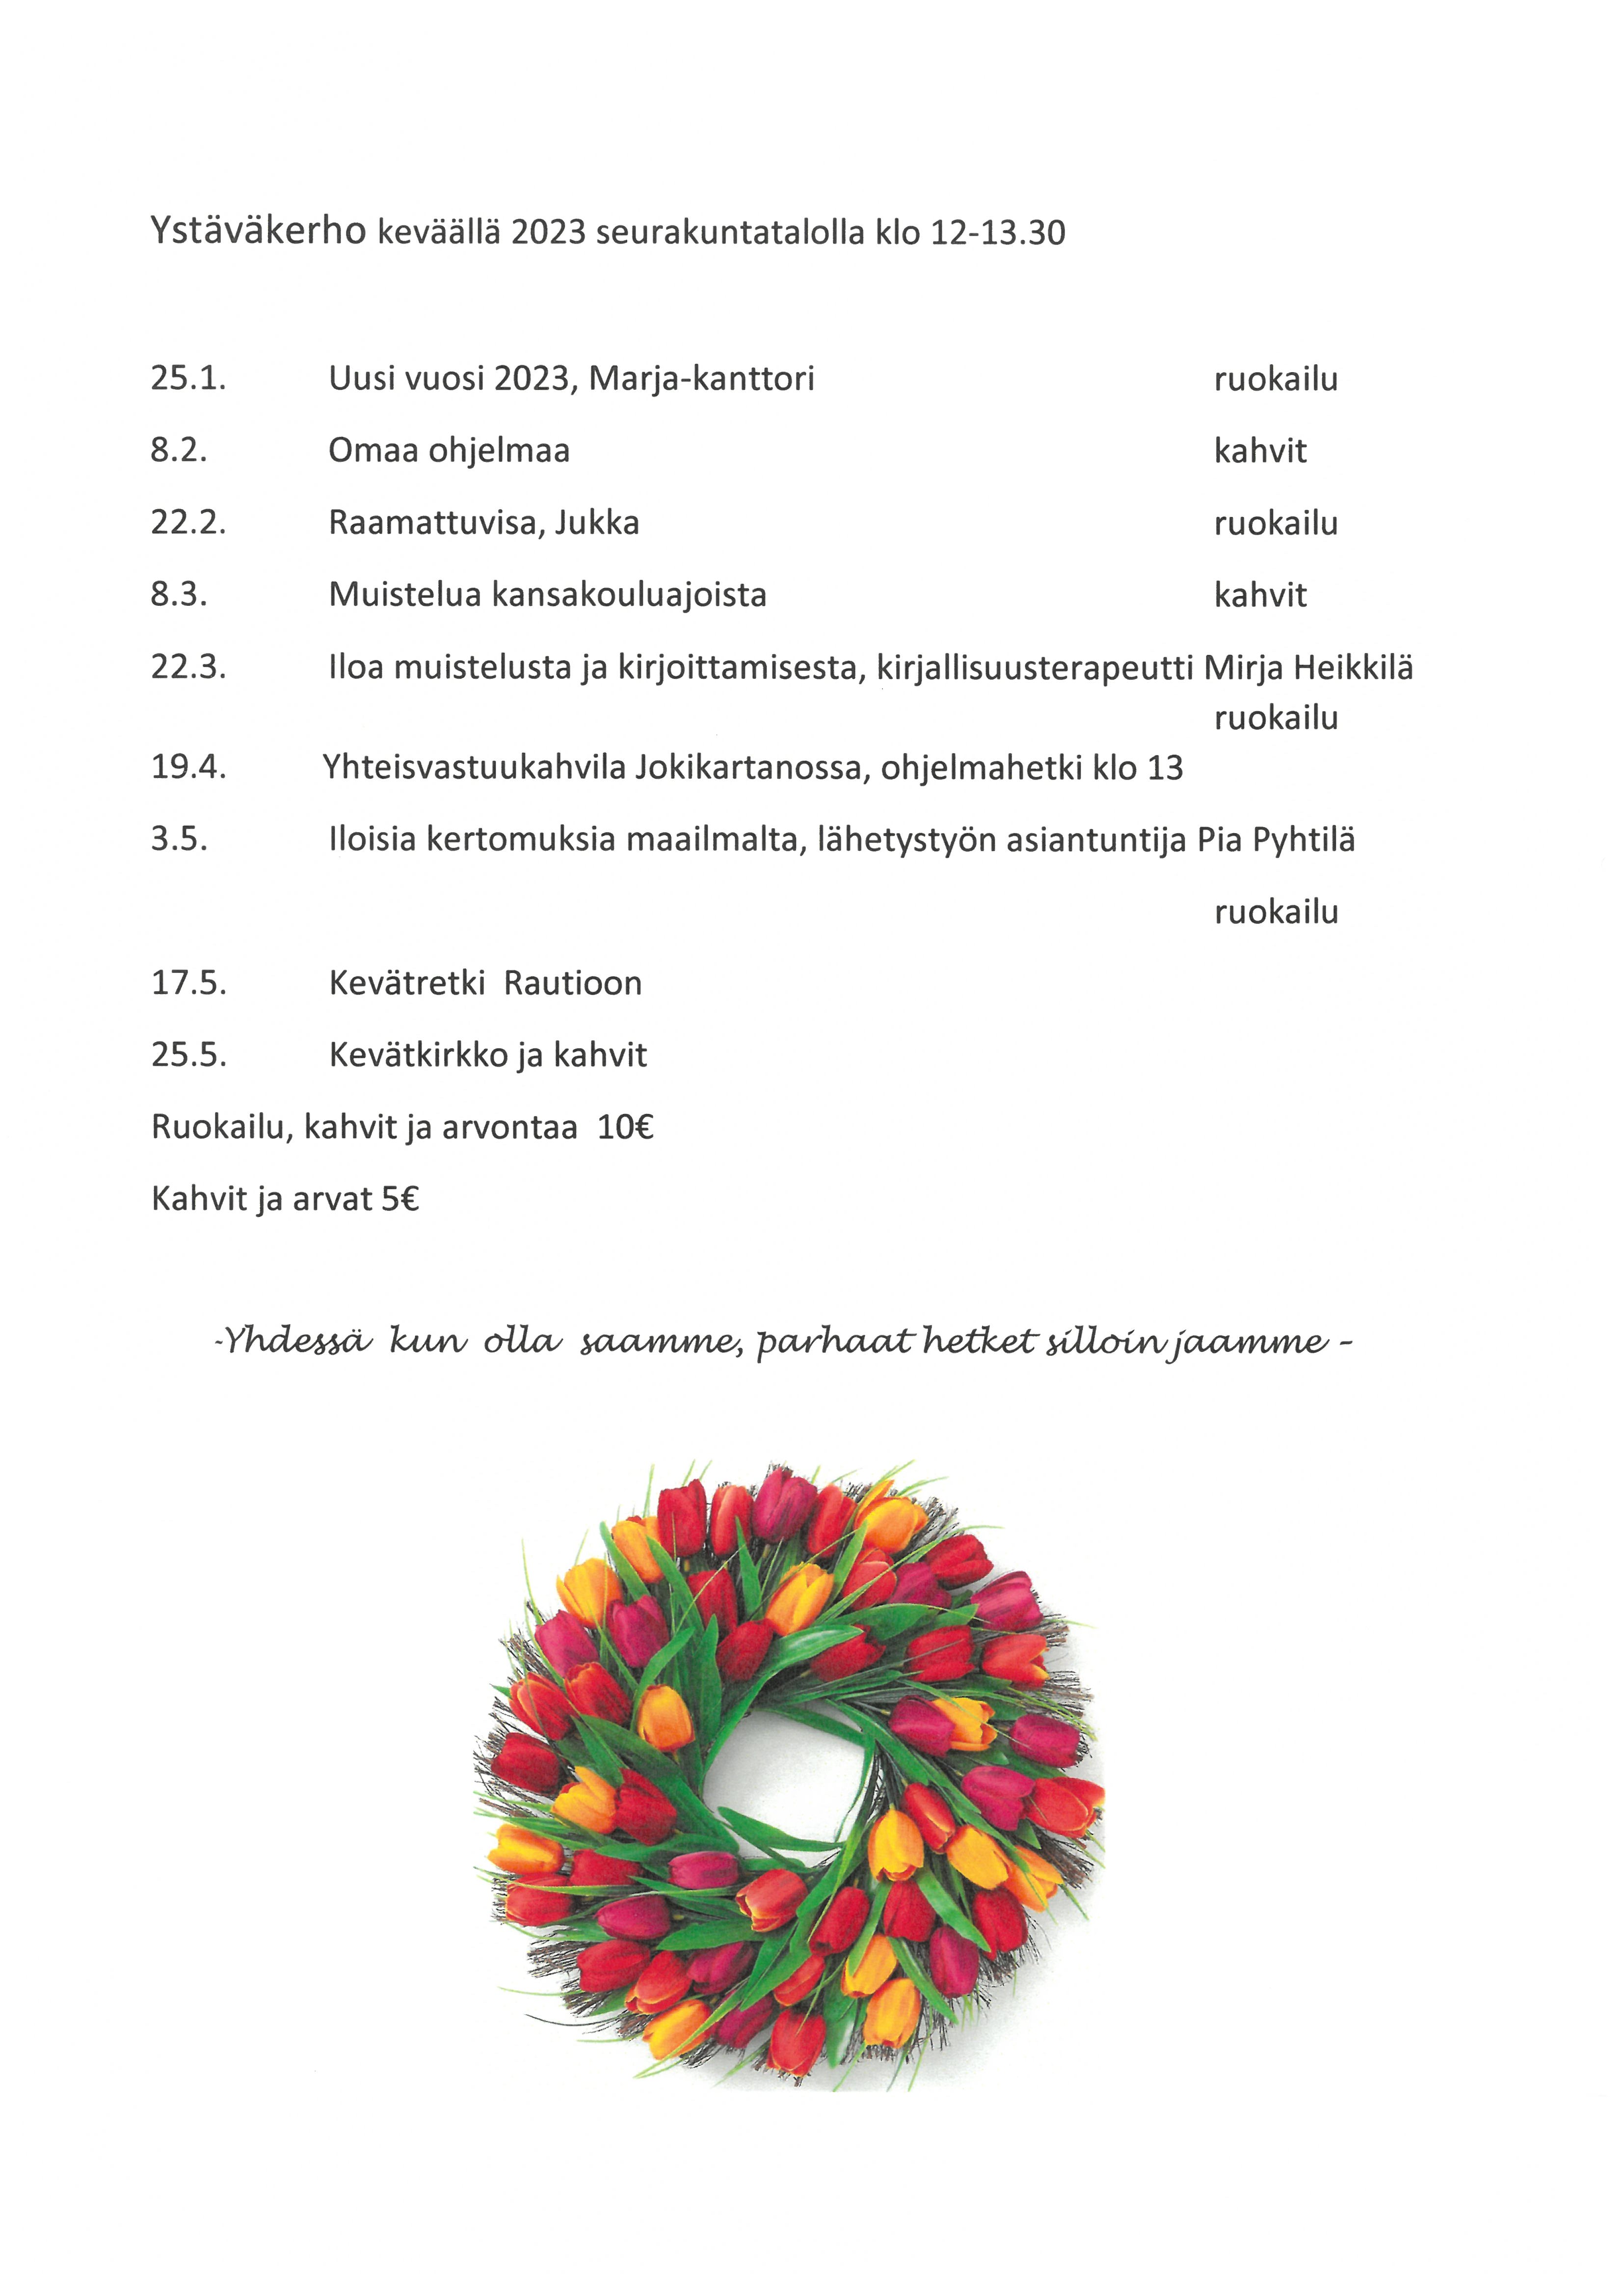 Ystäväkerho keväällä 2023 Pyhäjoen seurakuntatalolla klo 12 - 13.30